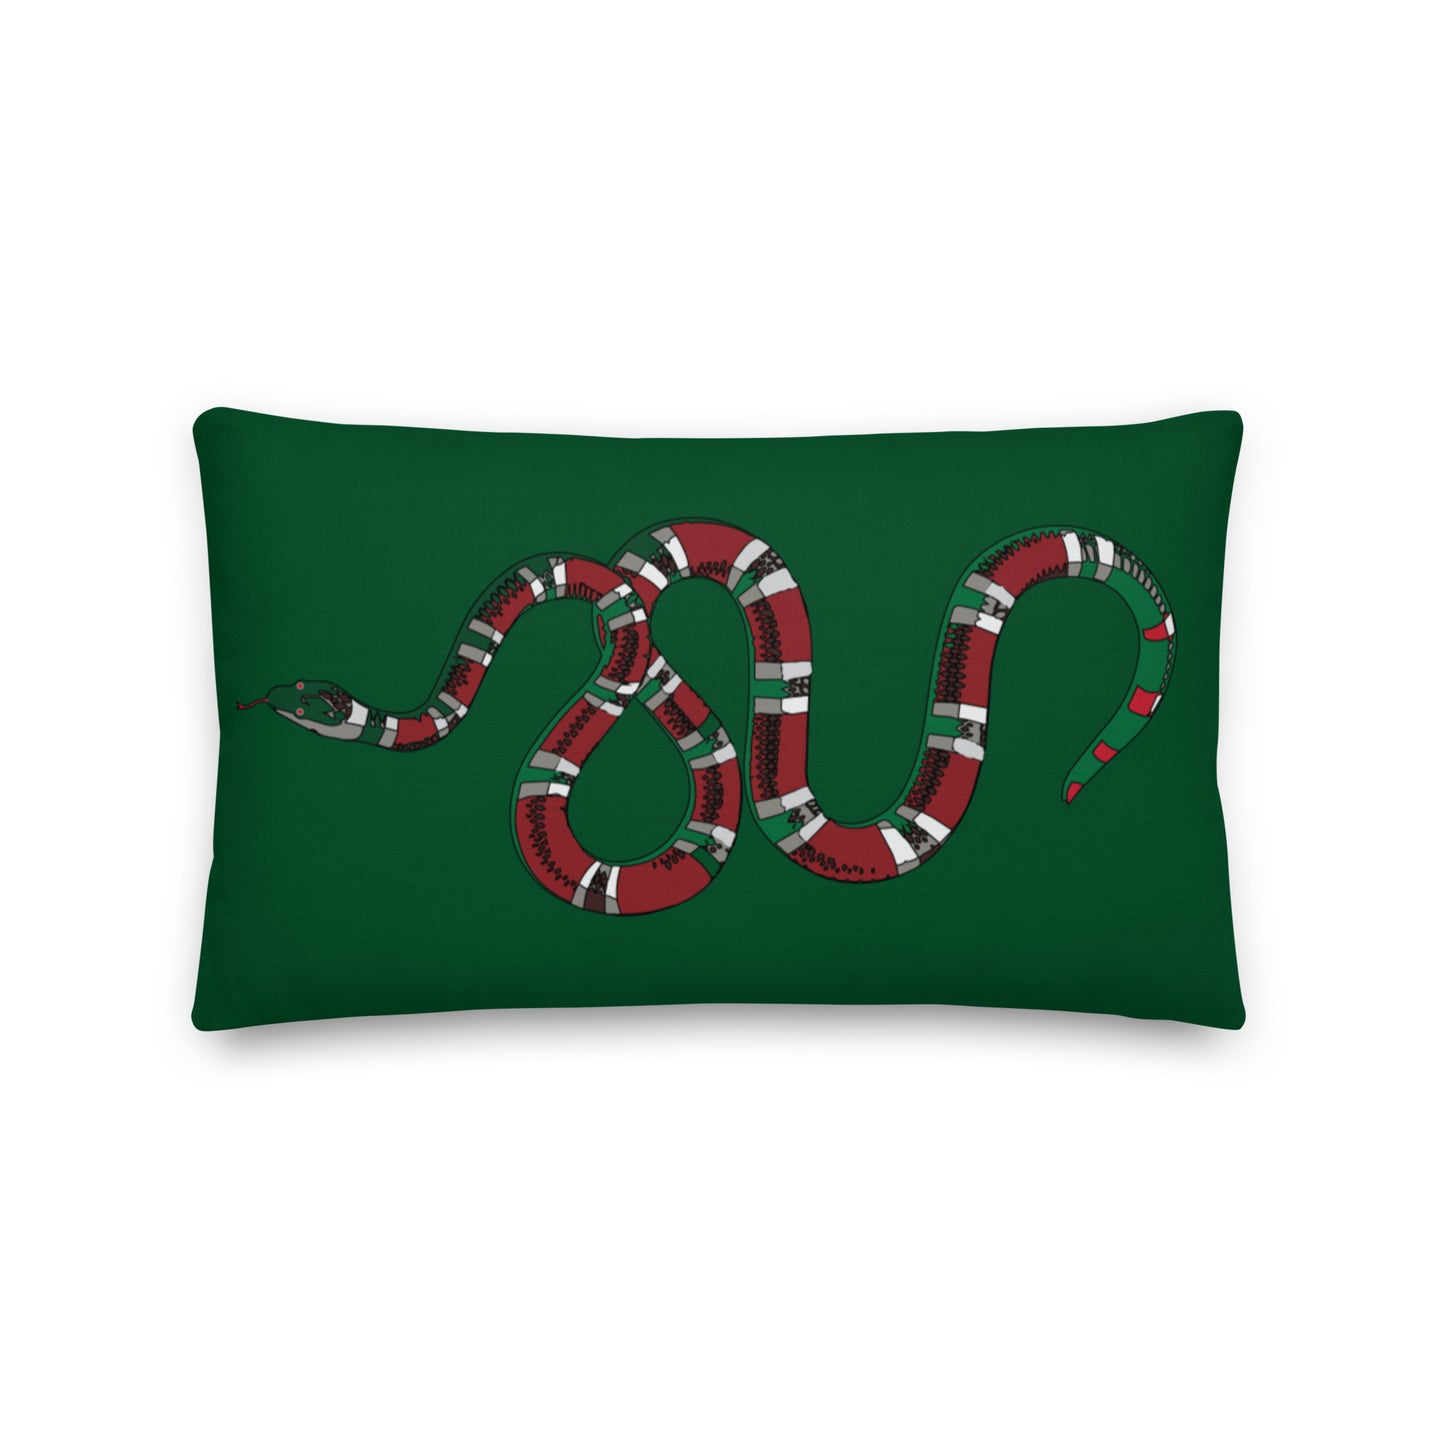 Designer Snakes On Green Premium Pillow - HipHatter